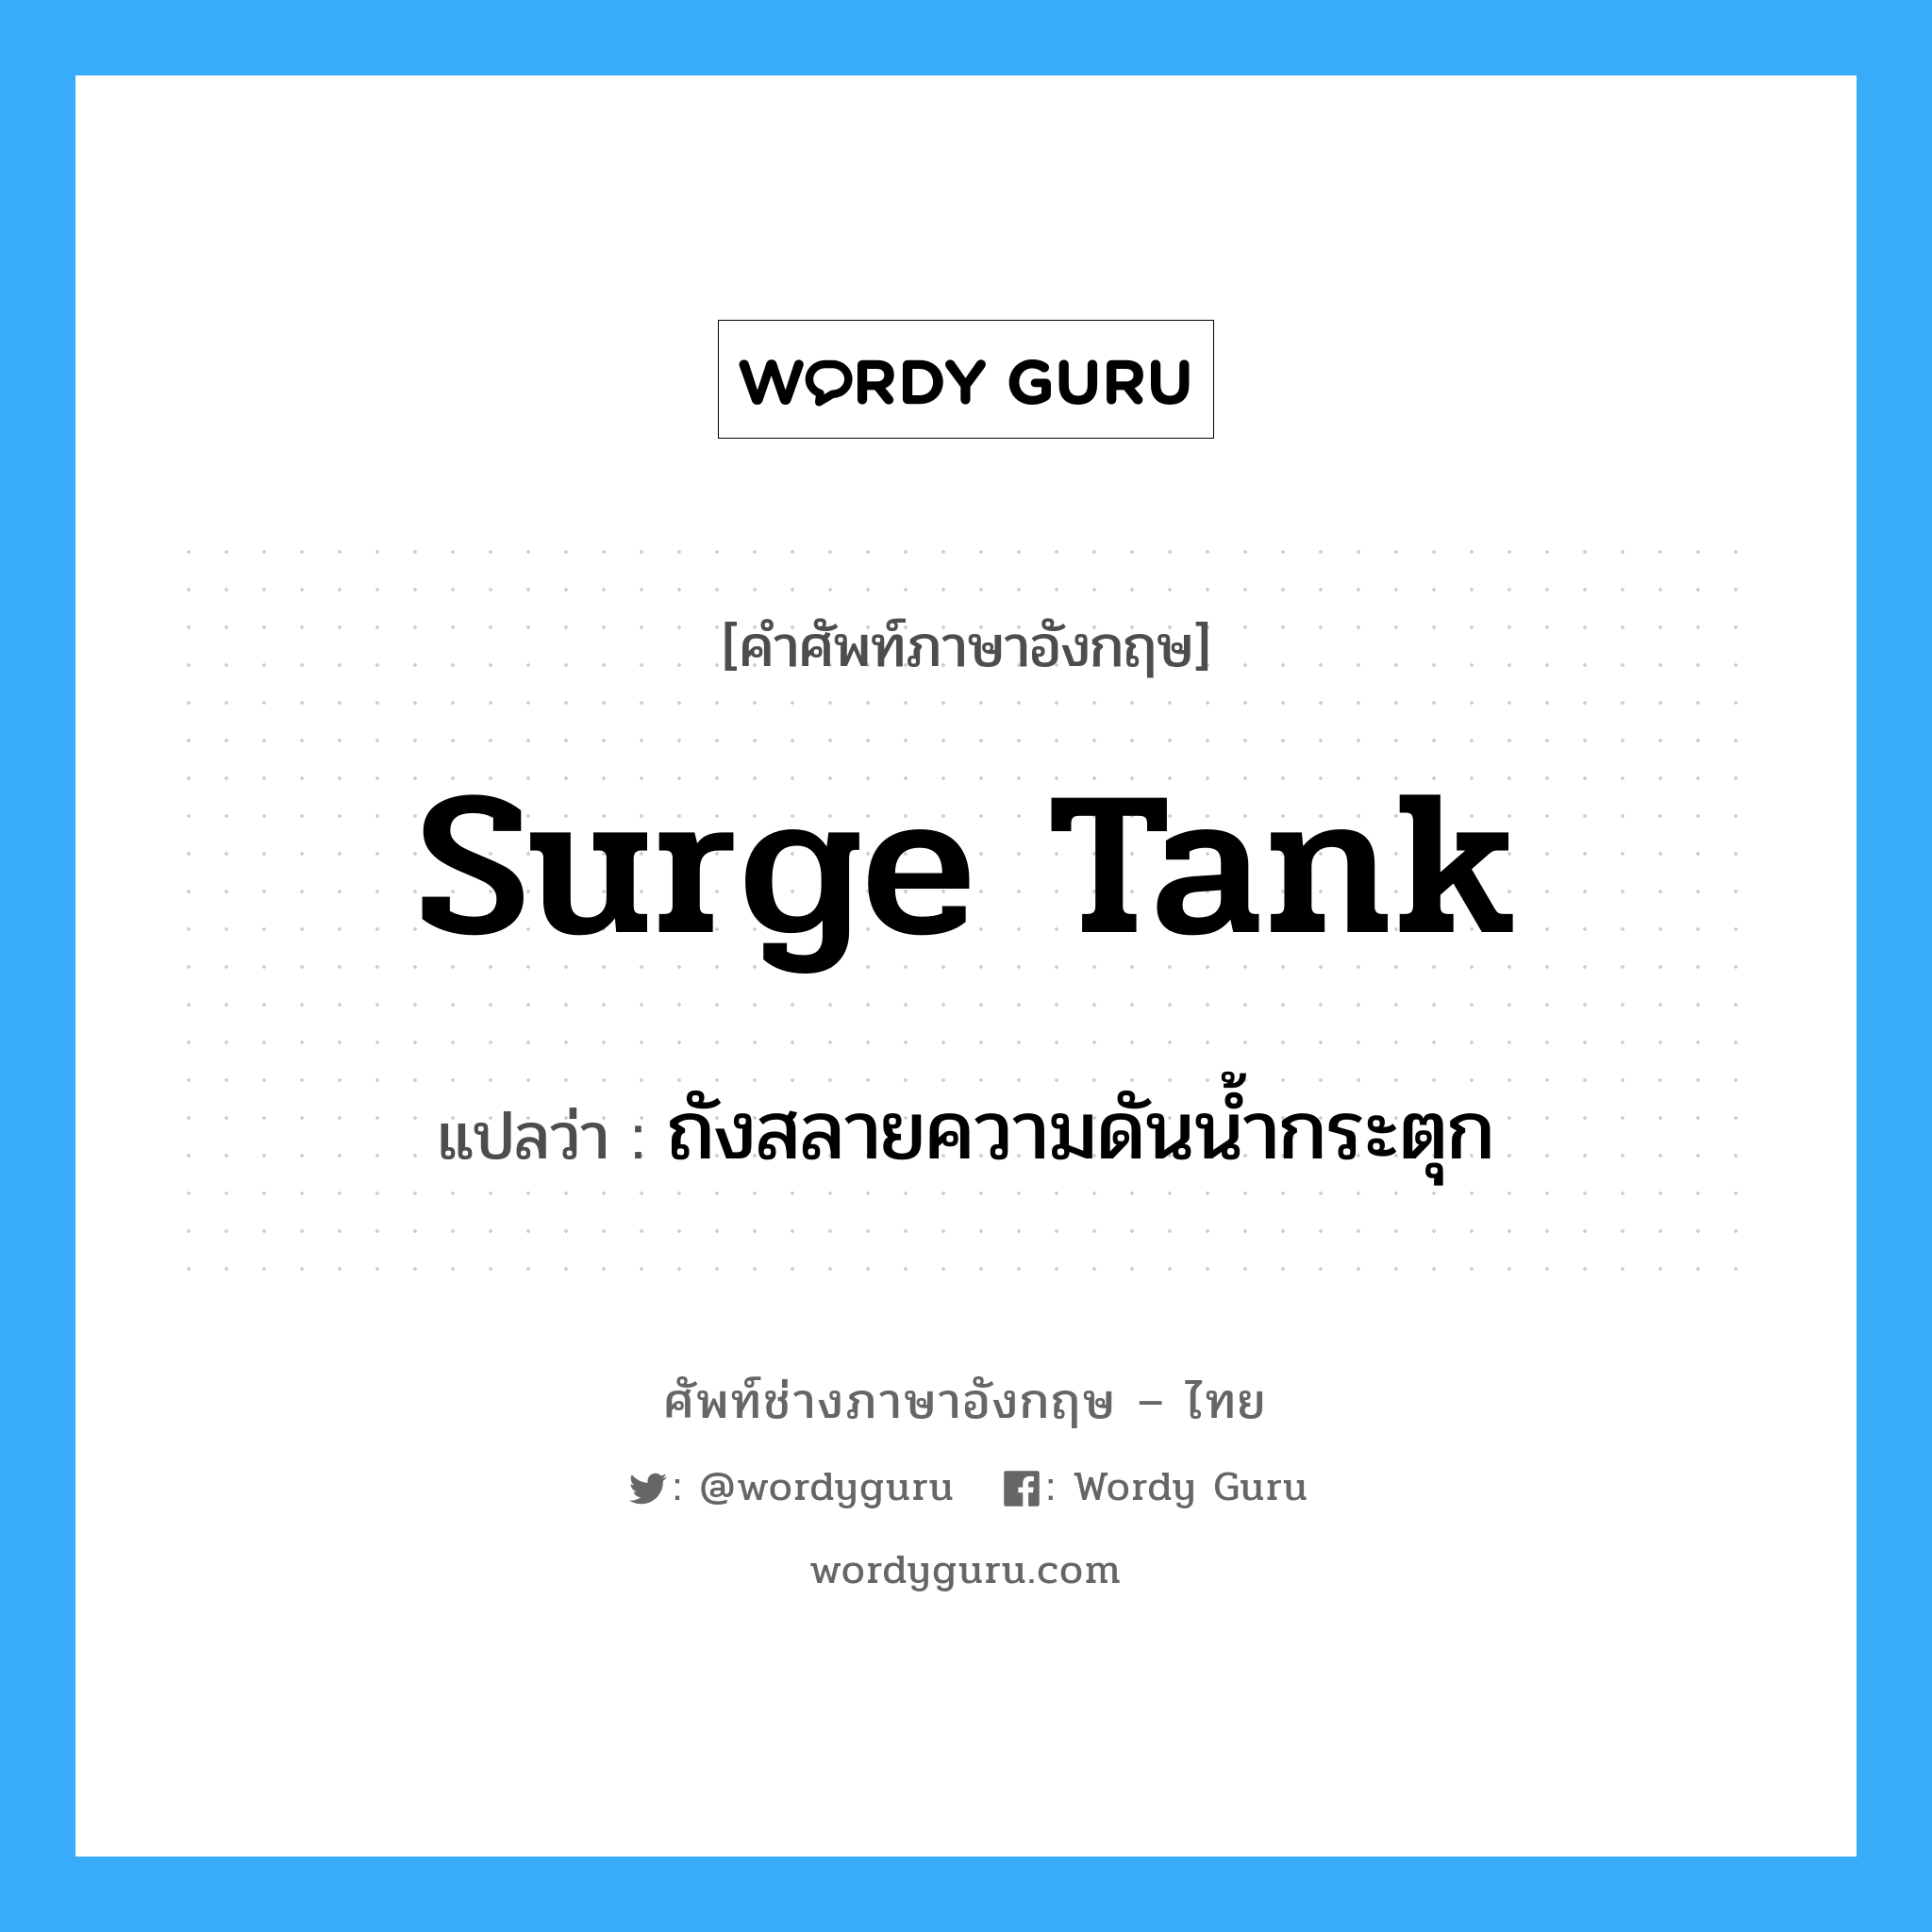 ถังสลายความดันน้ำกระตุก ภาษาอังกฤษ?, คำศัพท์ช่างภาษาอังกฤษ - ไทย ถังสลายความดันน้ำกระตุก คำศัพท์ภาษาอังกฤษ ถังสลายความดันน้ำกระตุก แปลว่า surge tank